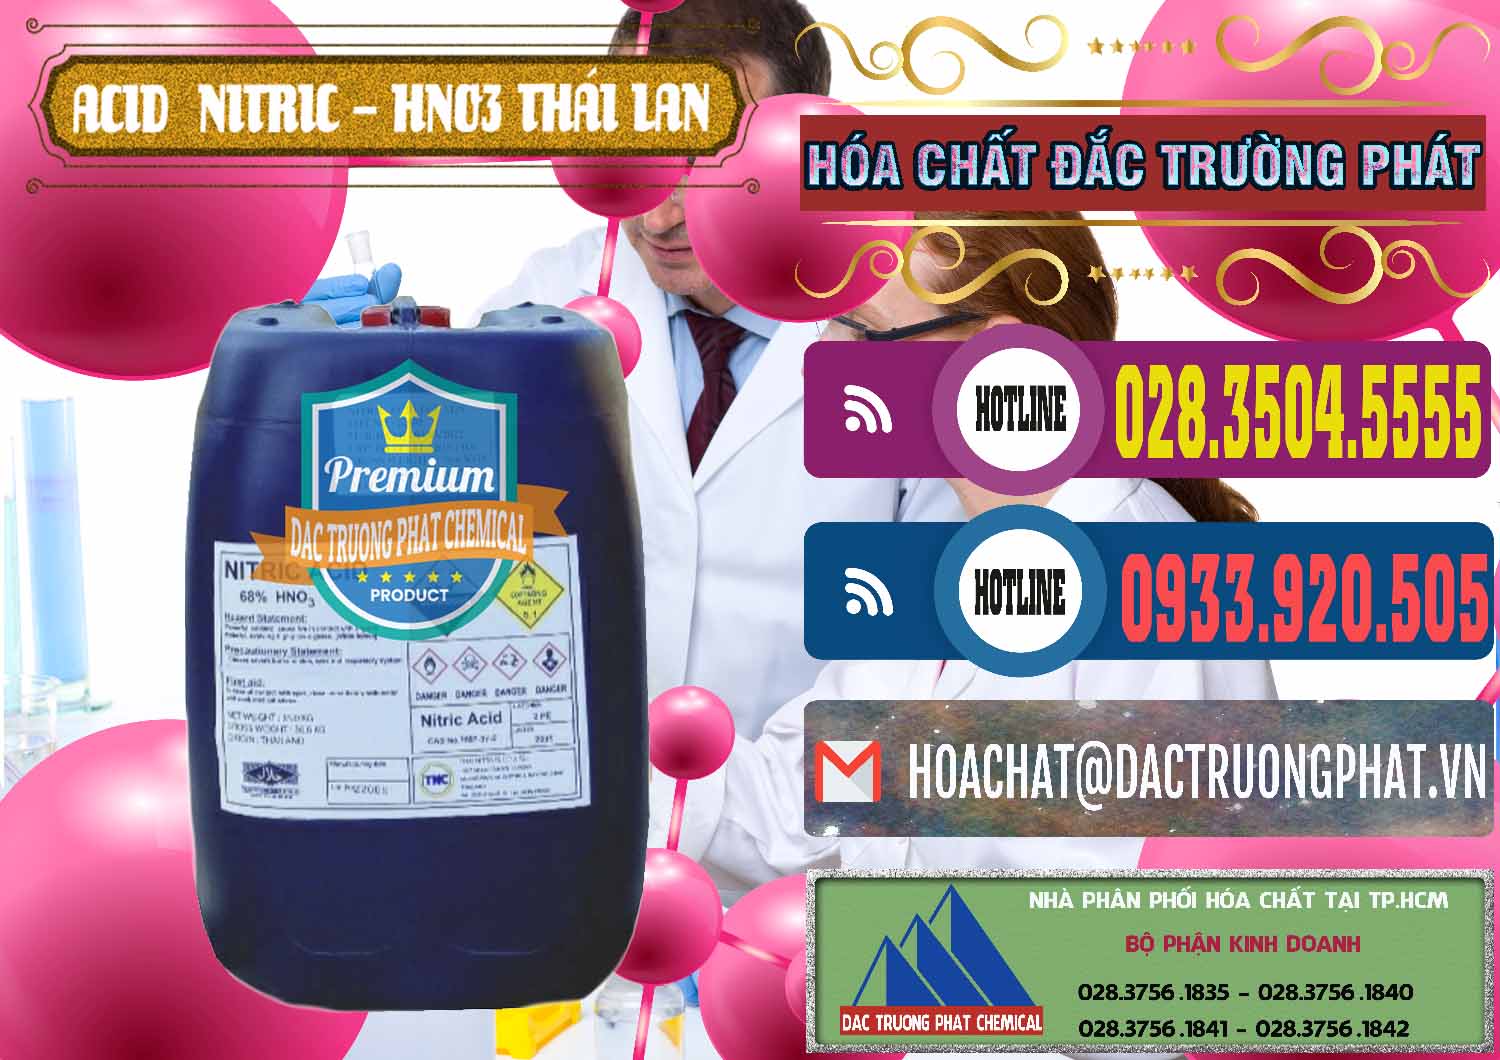 Chuyên cung cấp và bán Acid Nitric – Axit Nitric HNO3 Thái Lan Thailand - 0344 - Công ty phân phối & nhập khẩu hóa chất tại TP.HCM - muabanhoachat.com.vn